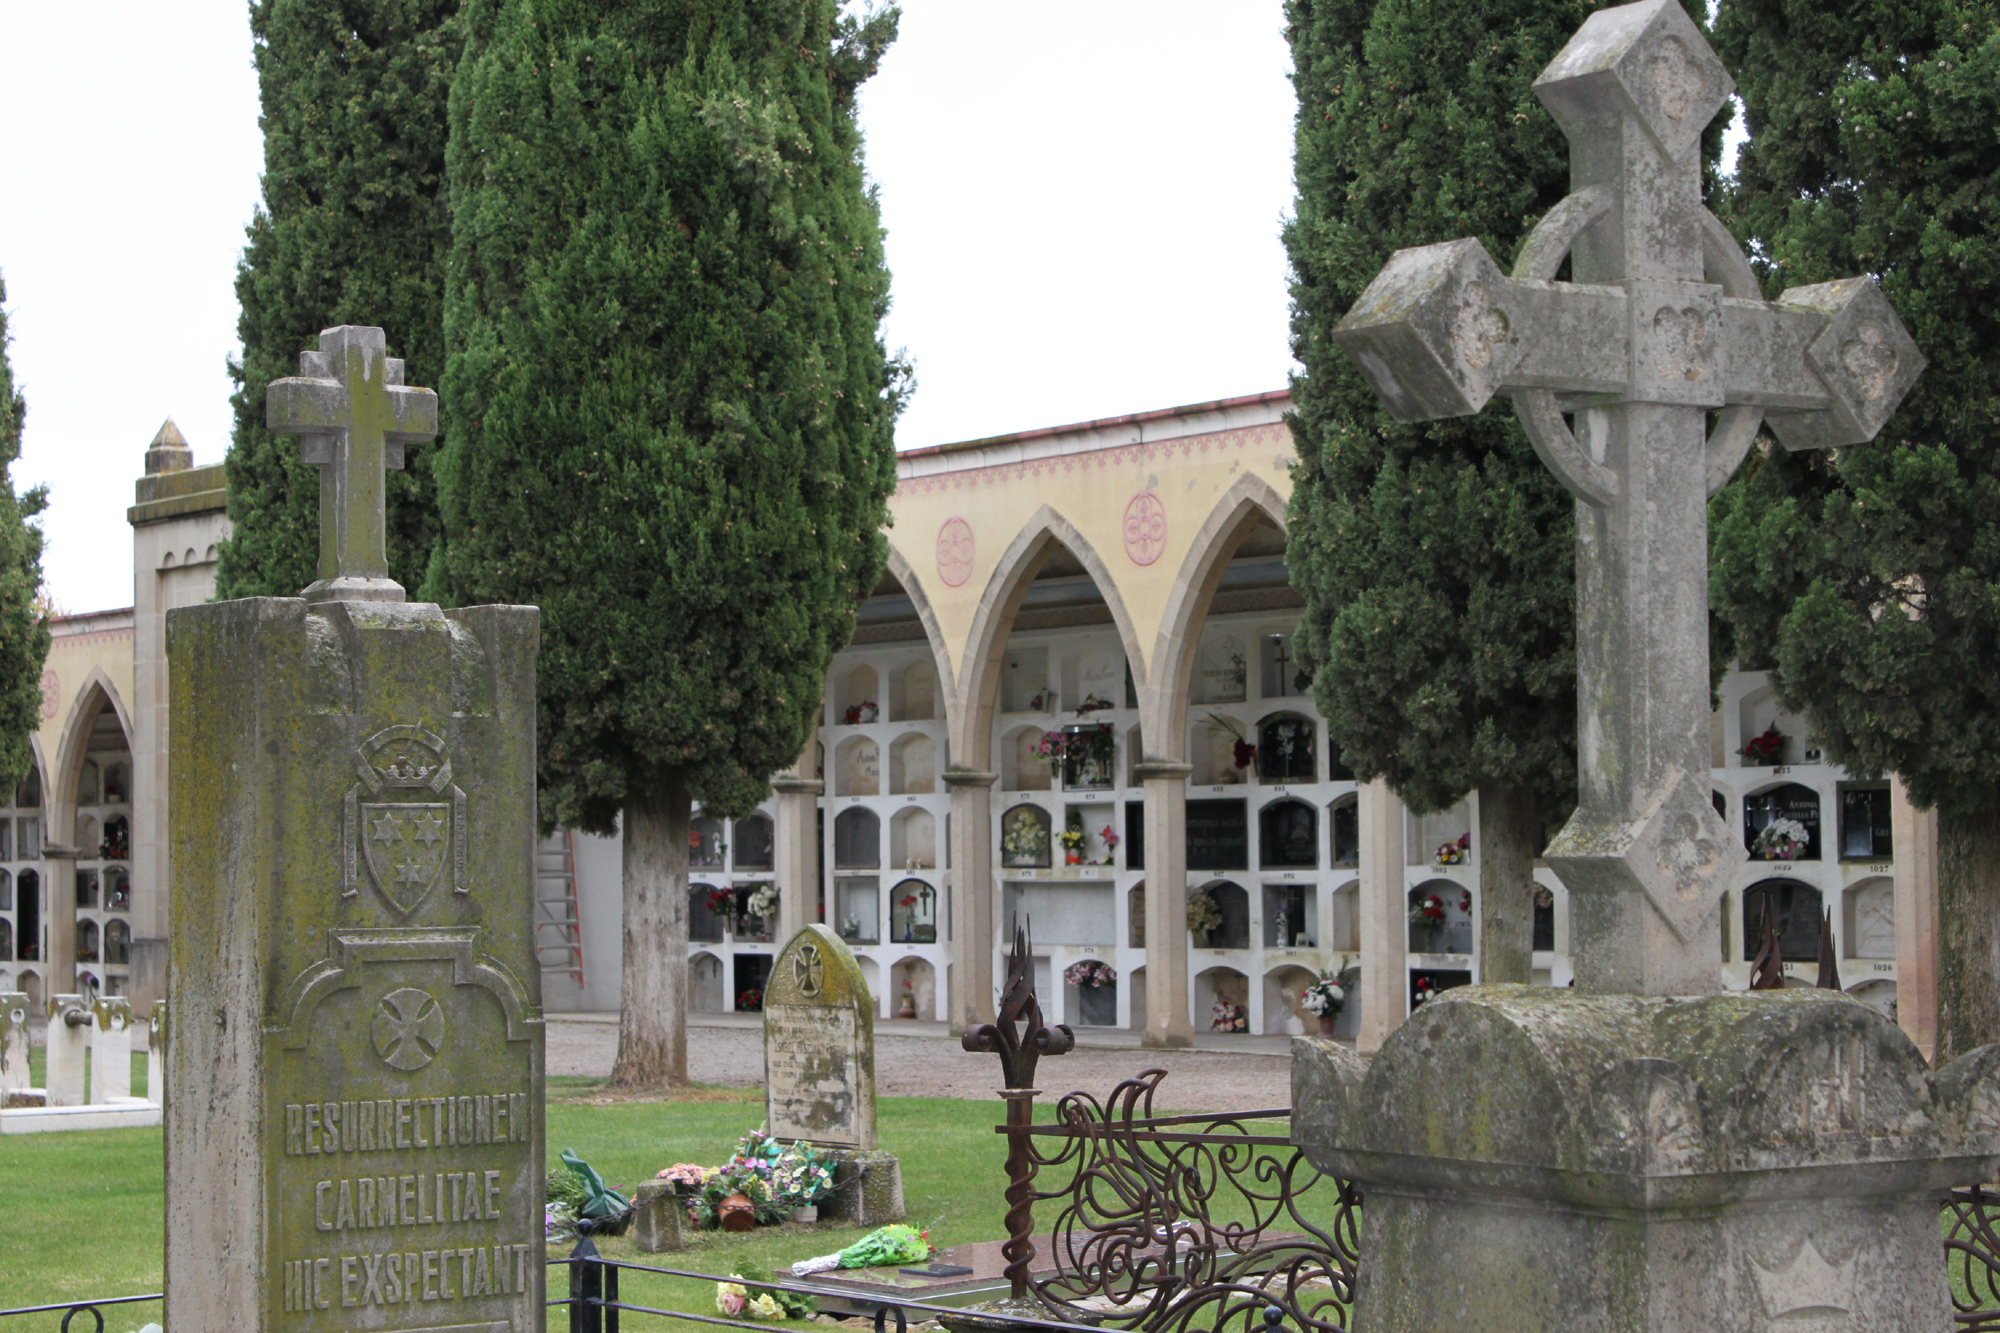 L’Ajuntament de Tàrrega aprova el projecte d’ampliació del cementiri municipal amb la construcció de 90 nous nínxols